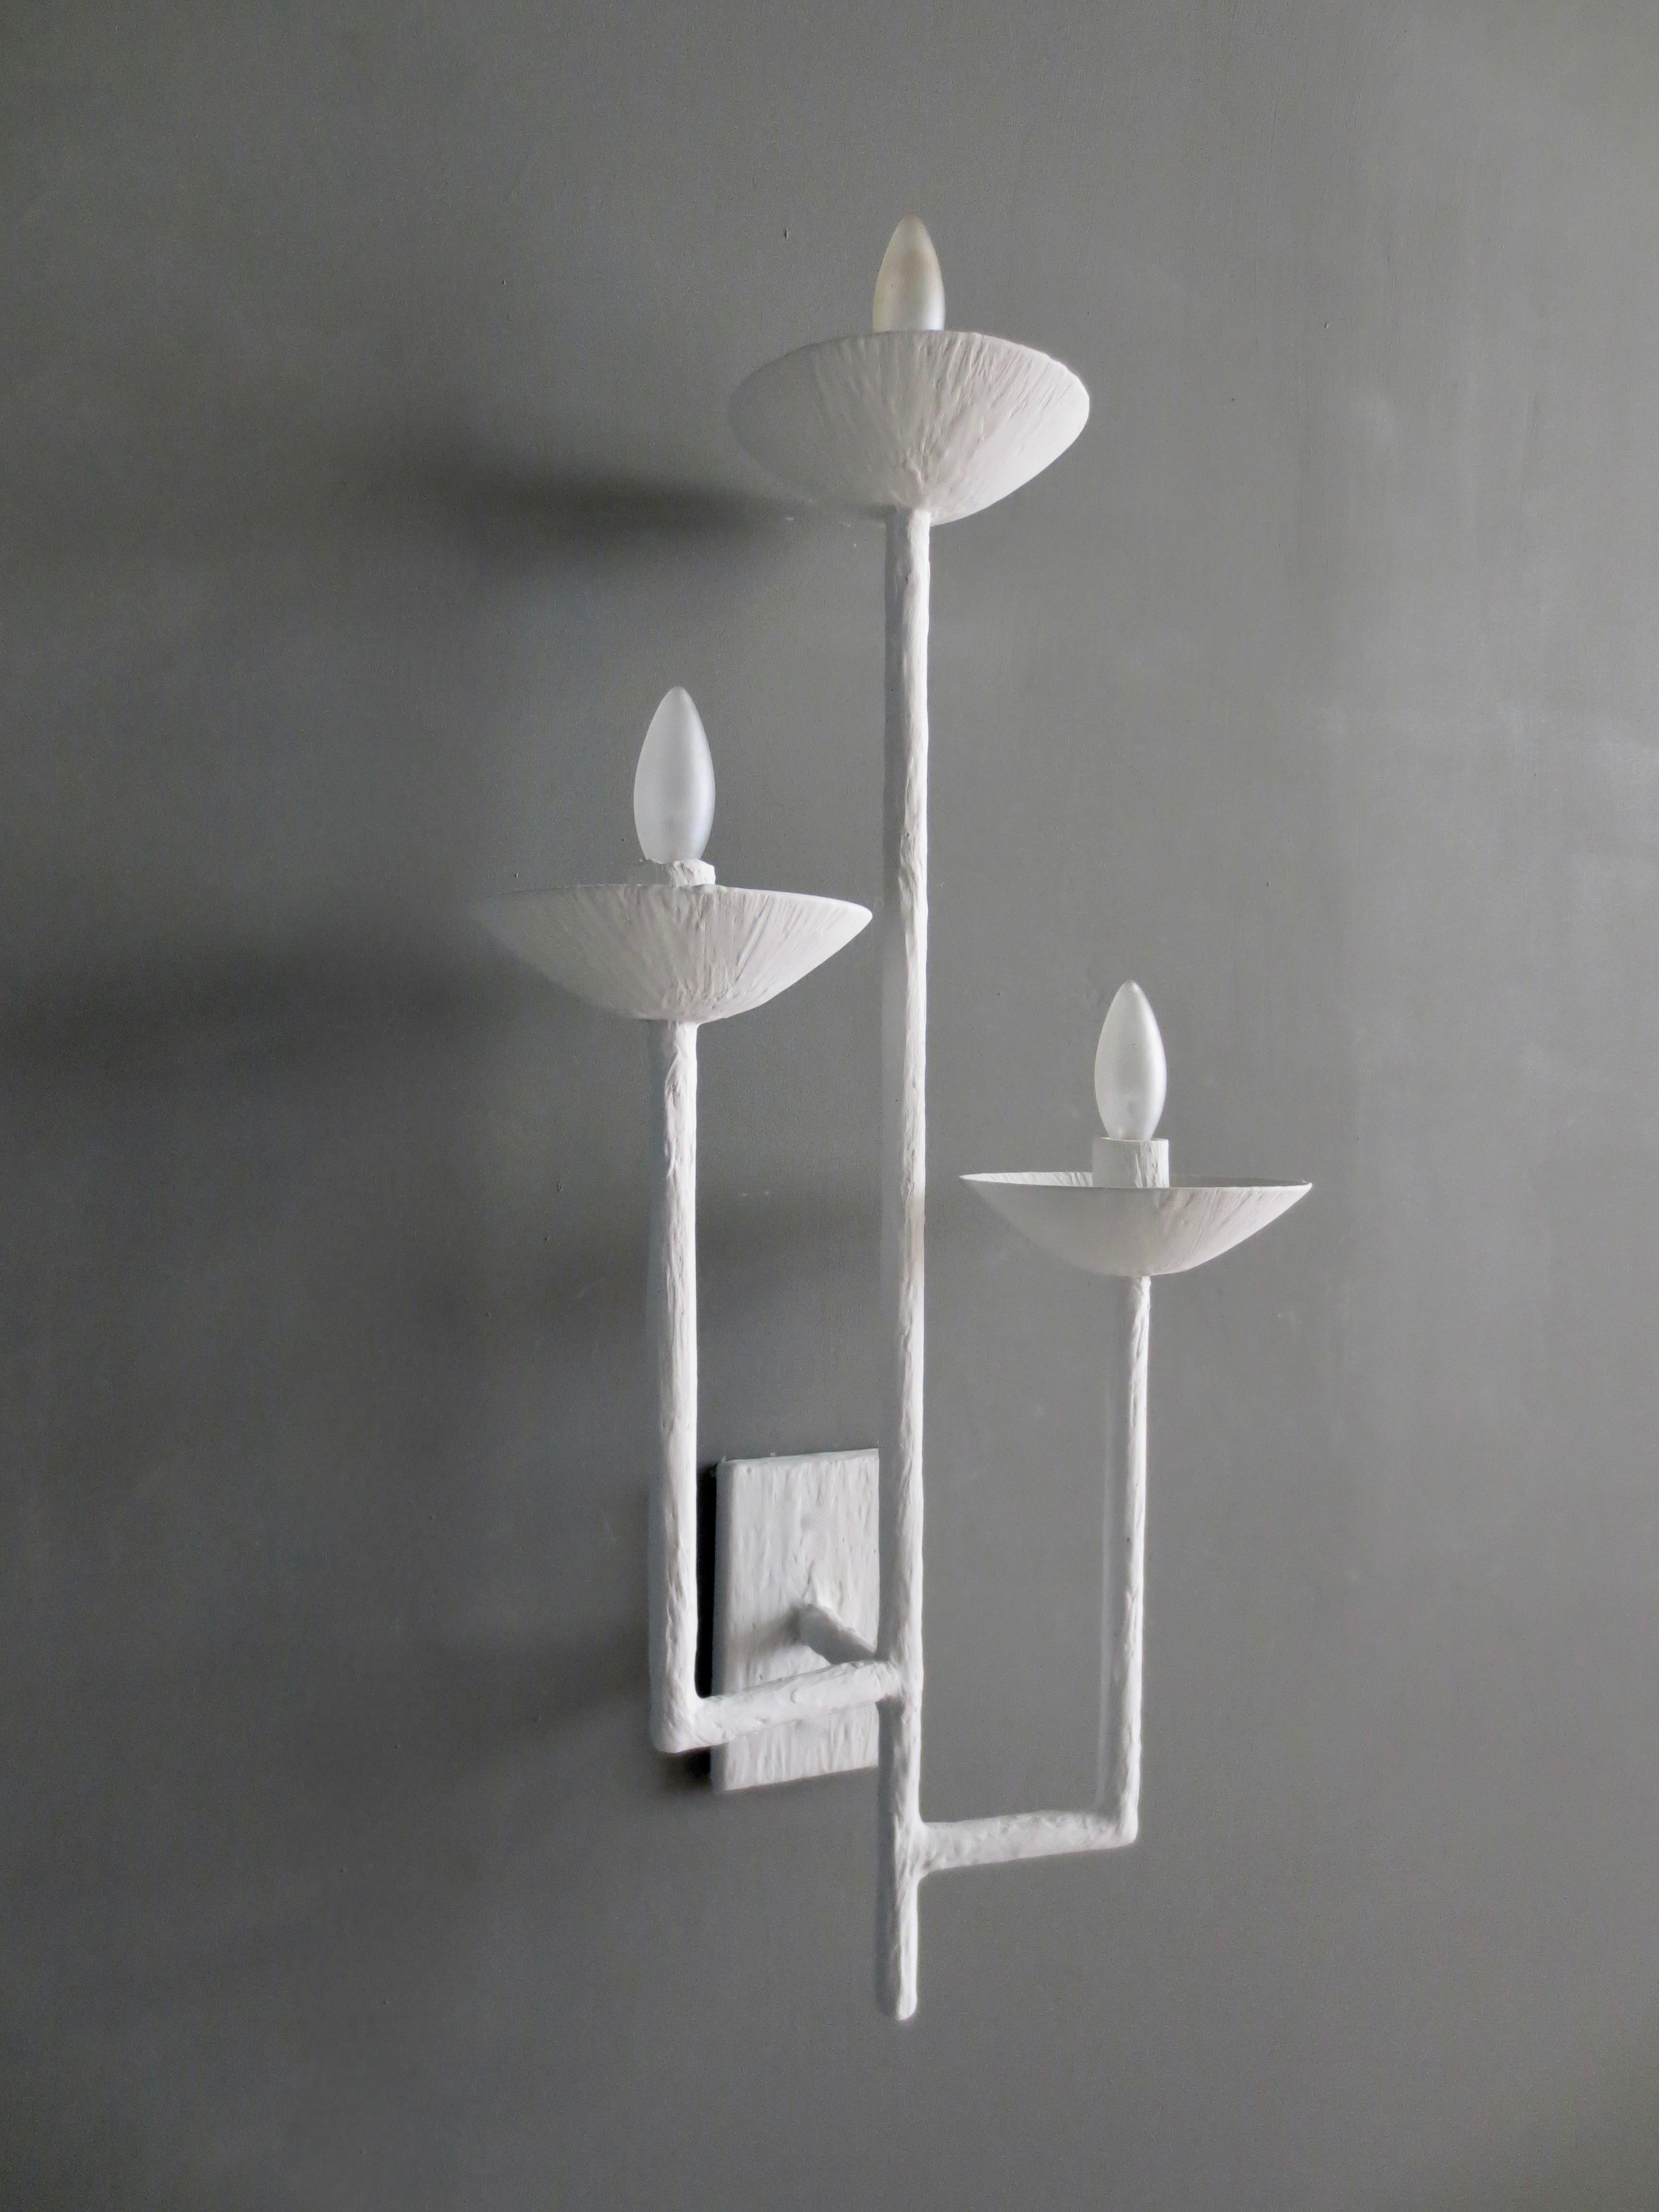 Paire d'appliques en plâtre à trois bras, réalisées par Tracey Garet d'Apsara Interior Design.
Chaque applique comporte 3 coupelles de hauteurs différentes et est présentée en plâtre blanc. Les coupes contiennent chacune un candélabre. Les